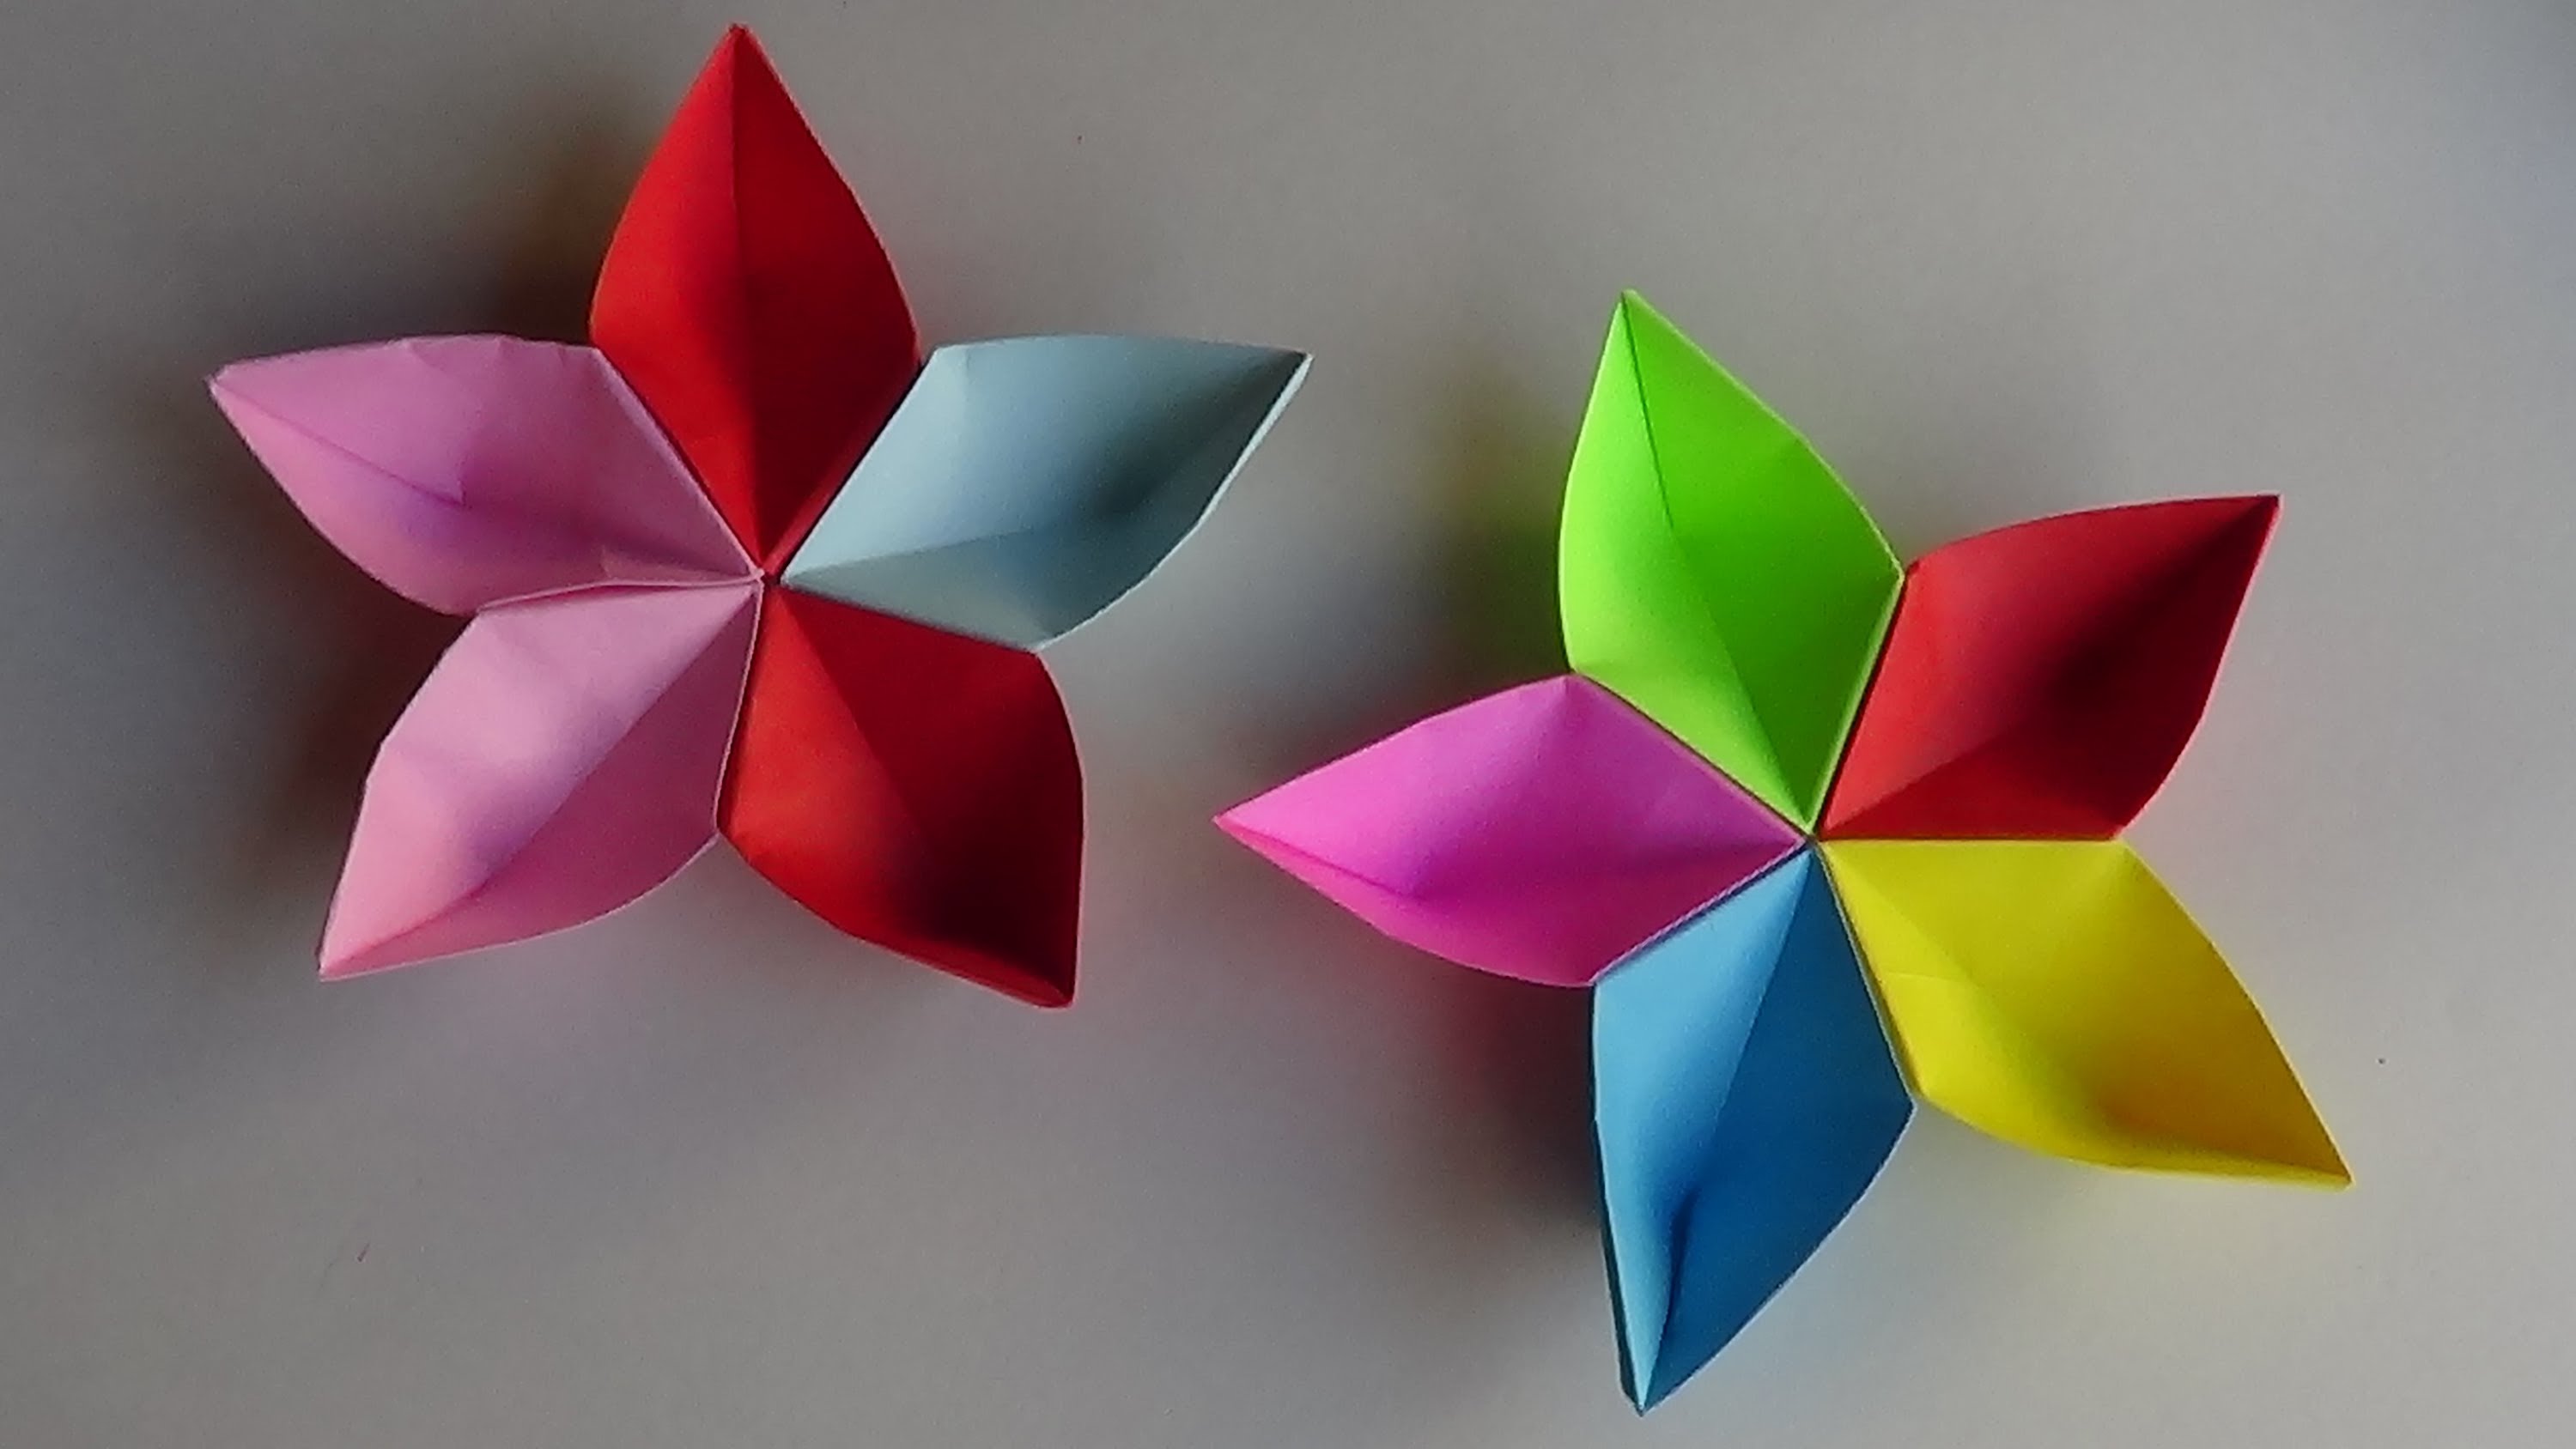 ¿Cómo hacer flores de origami con papel? - ¿Cómo lo puedo ...